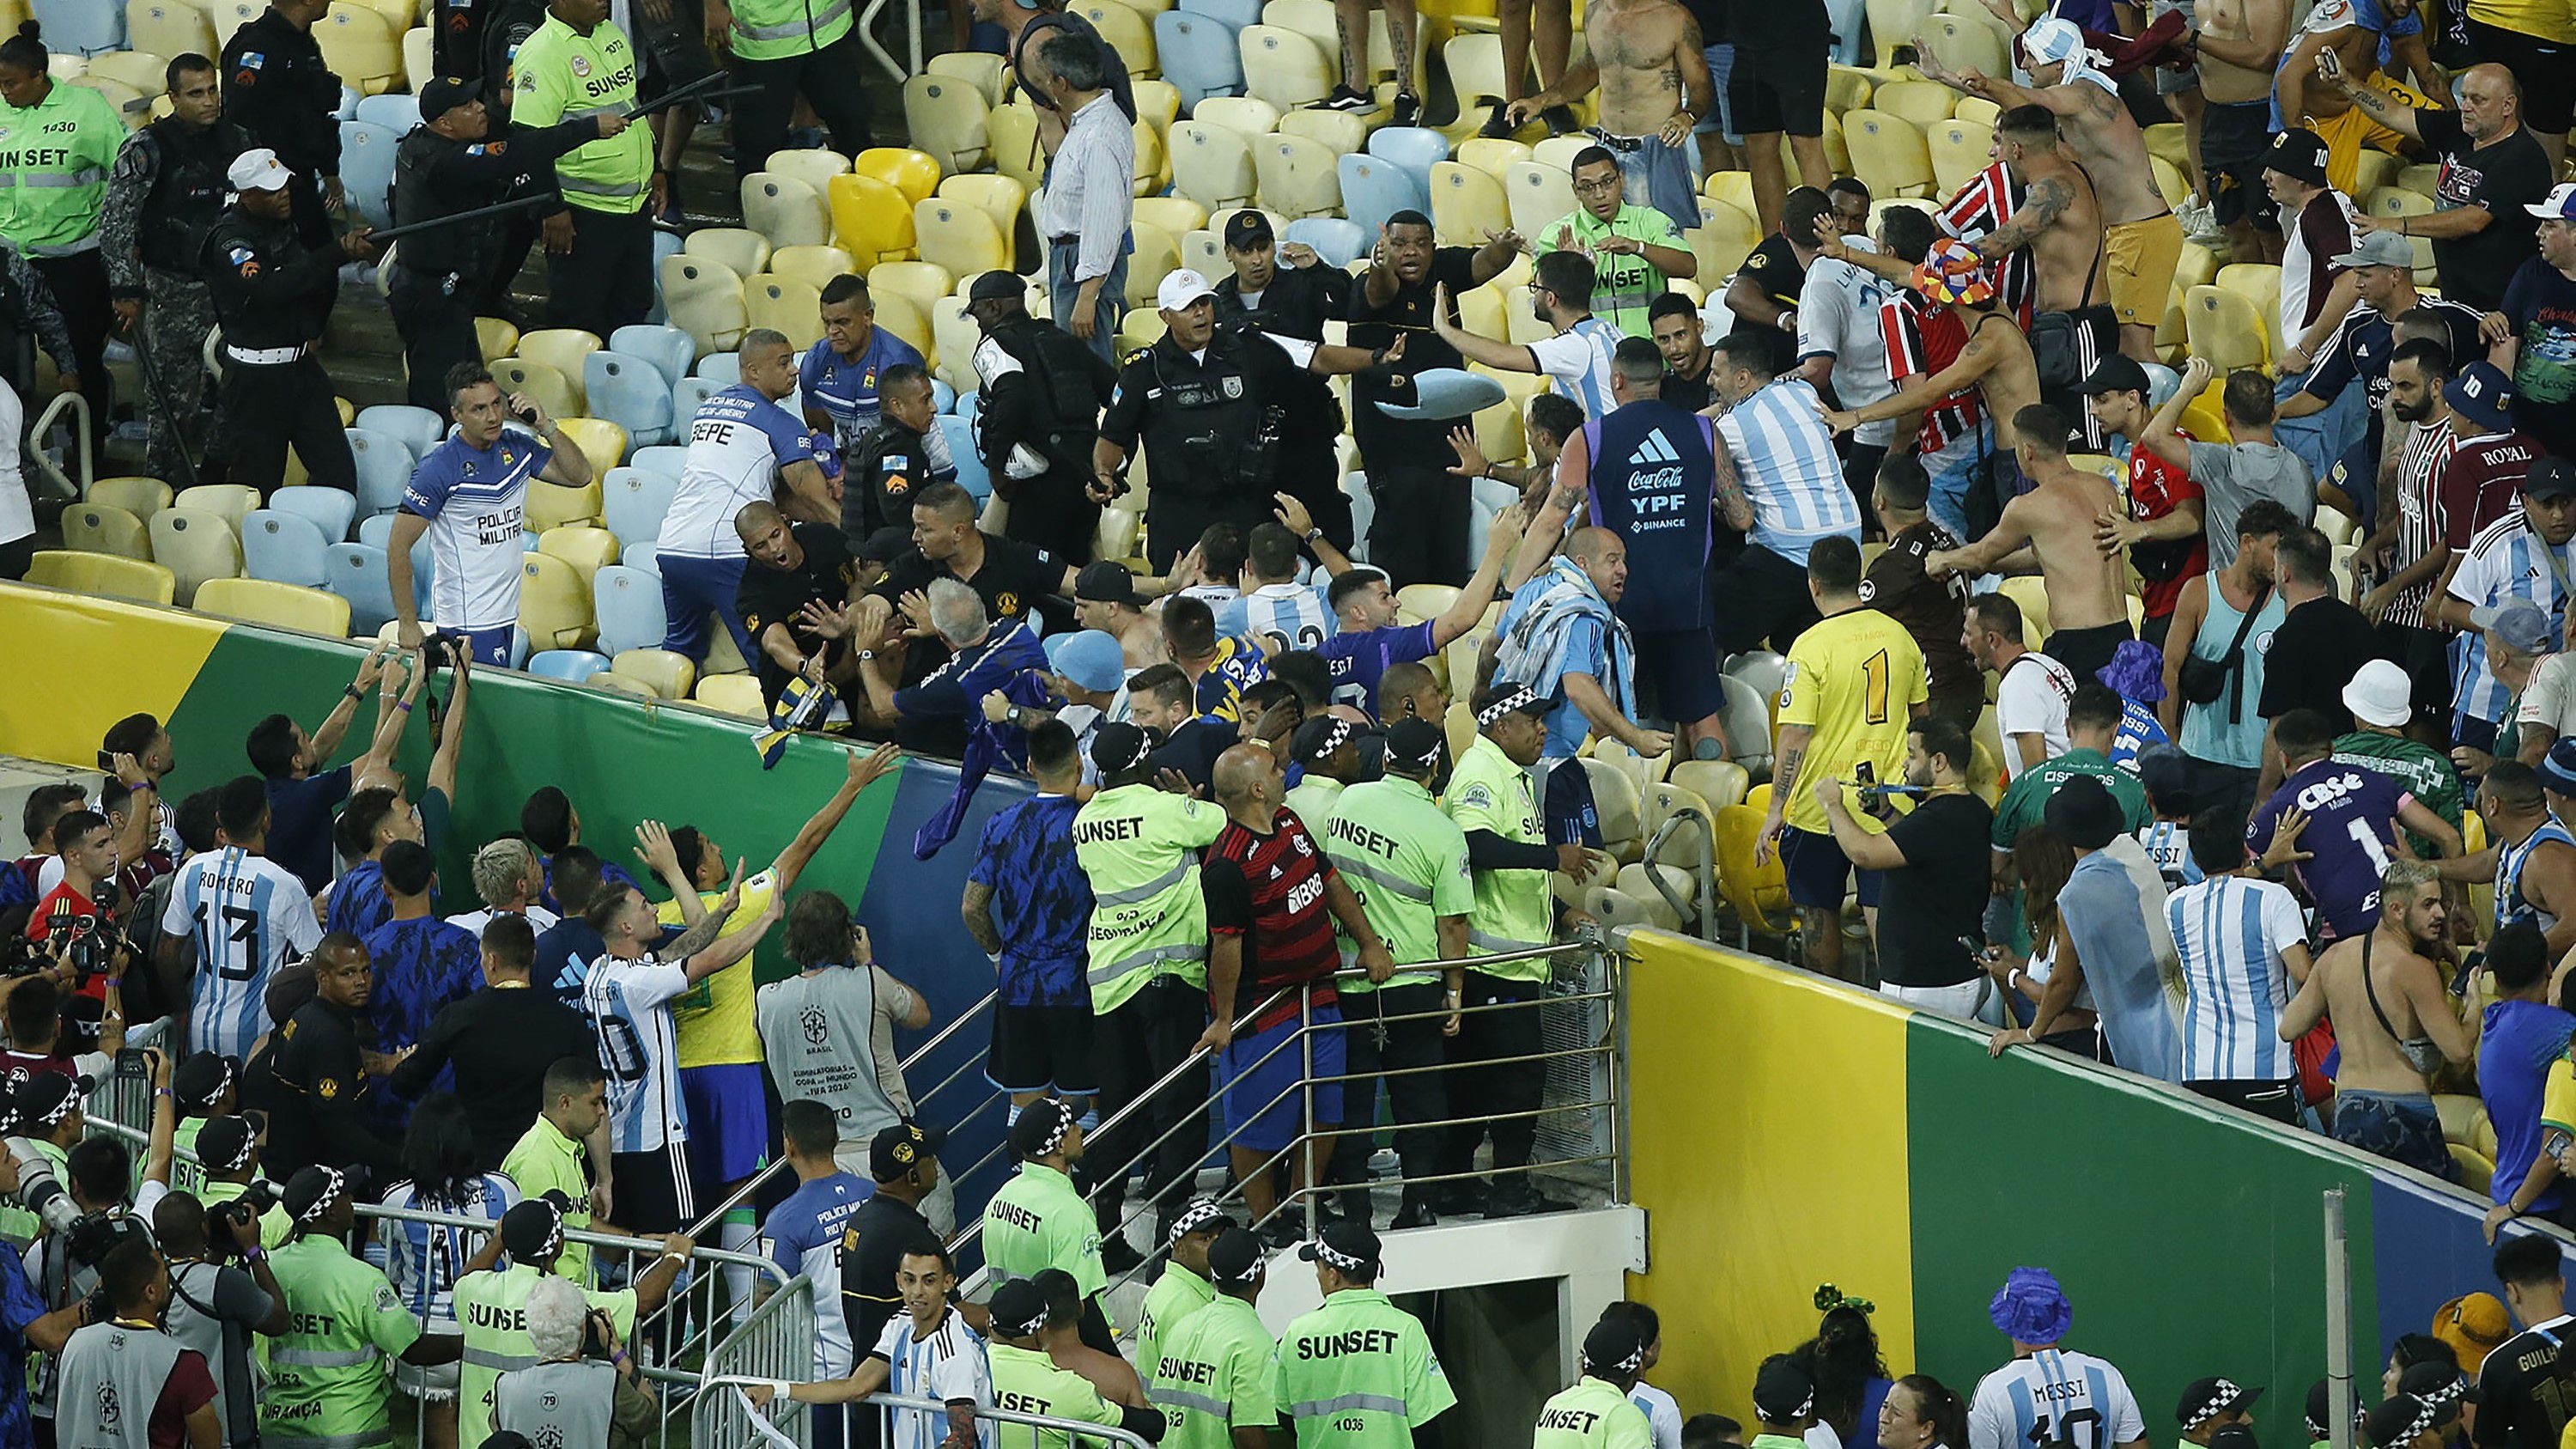 Feszült volt a hangulat a Maracanában, a játékosok (balra lent) is az incidens közelében tartózkodtak. (Fotó: Getty Images)